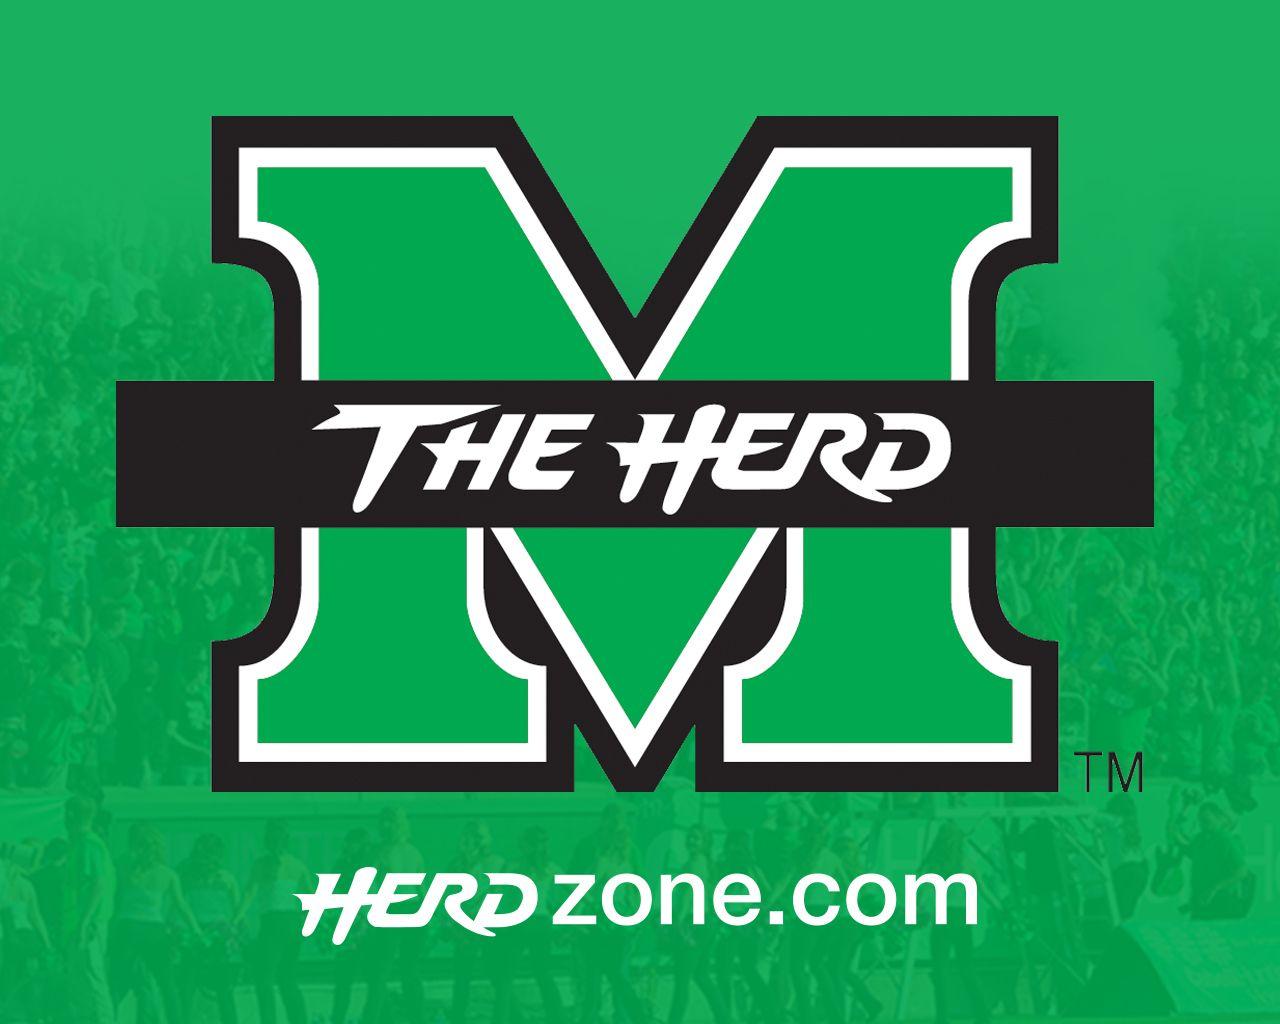 HERDZONE.COM - Marshall Thundering Herd Official Athletic Site